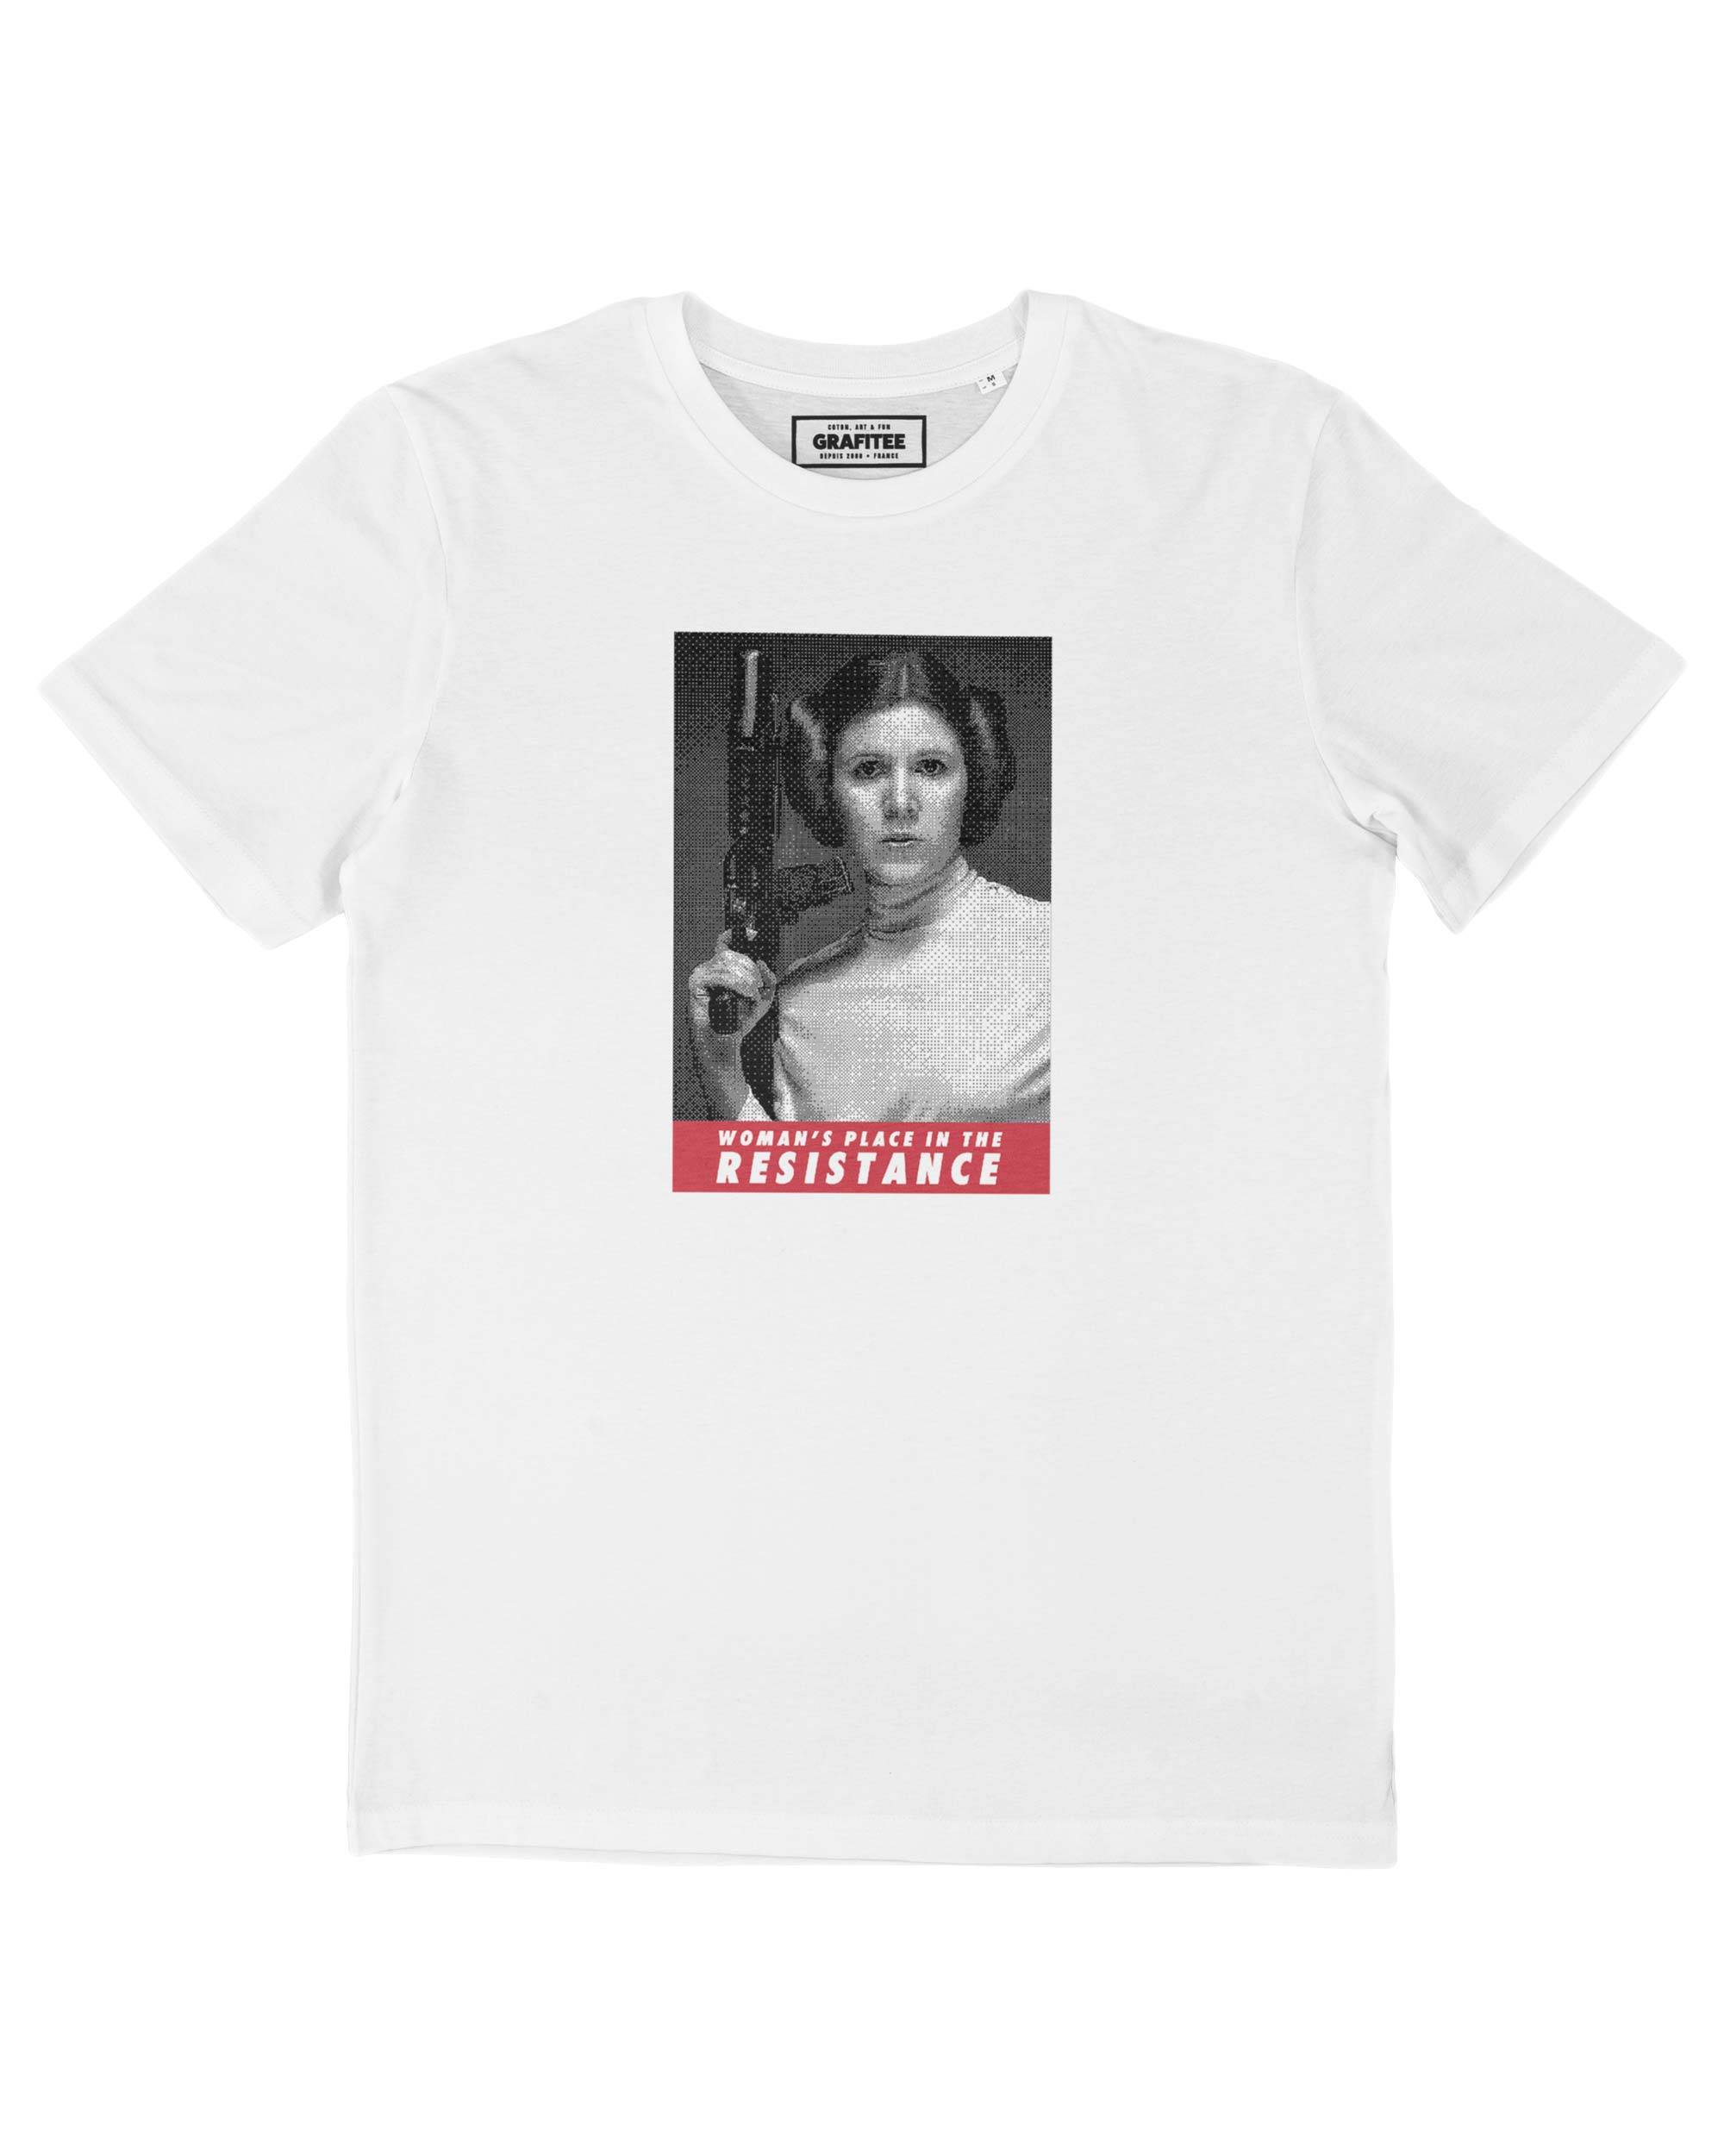 T-shirt Femme avec un Woman’s Place Grafitee